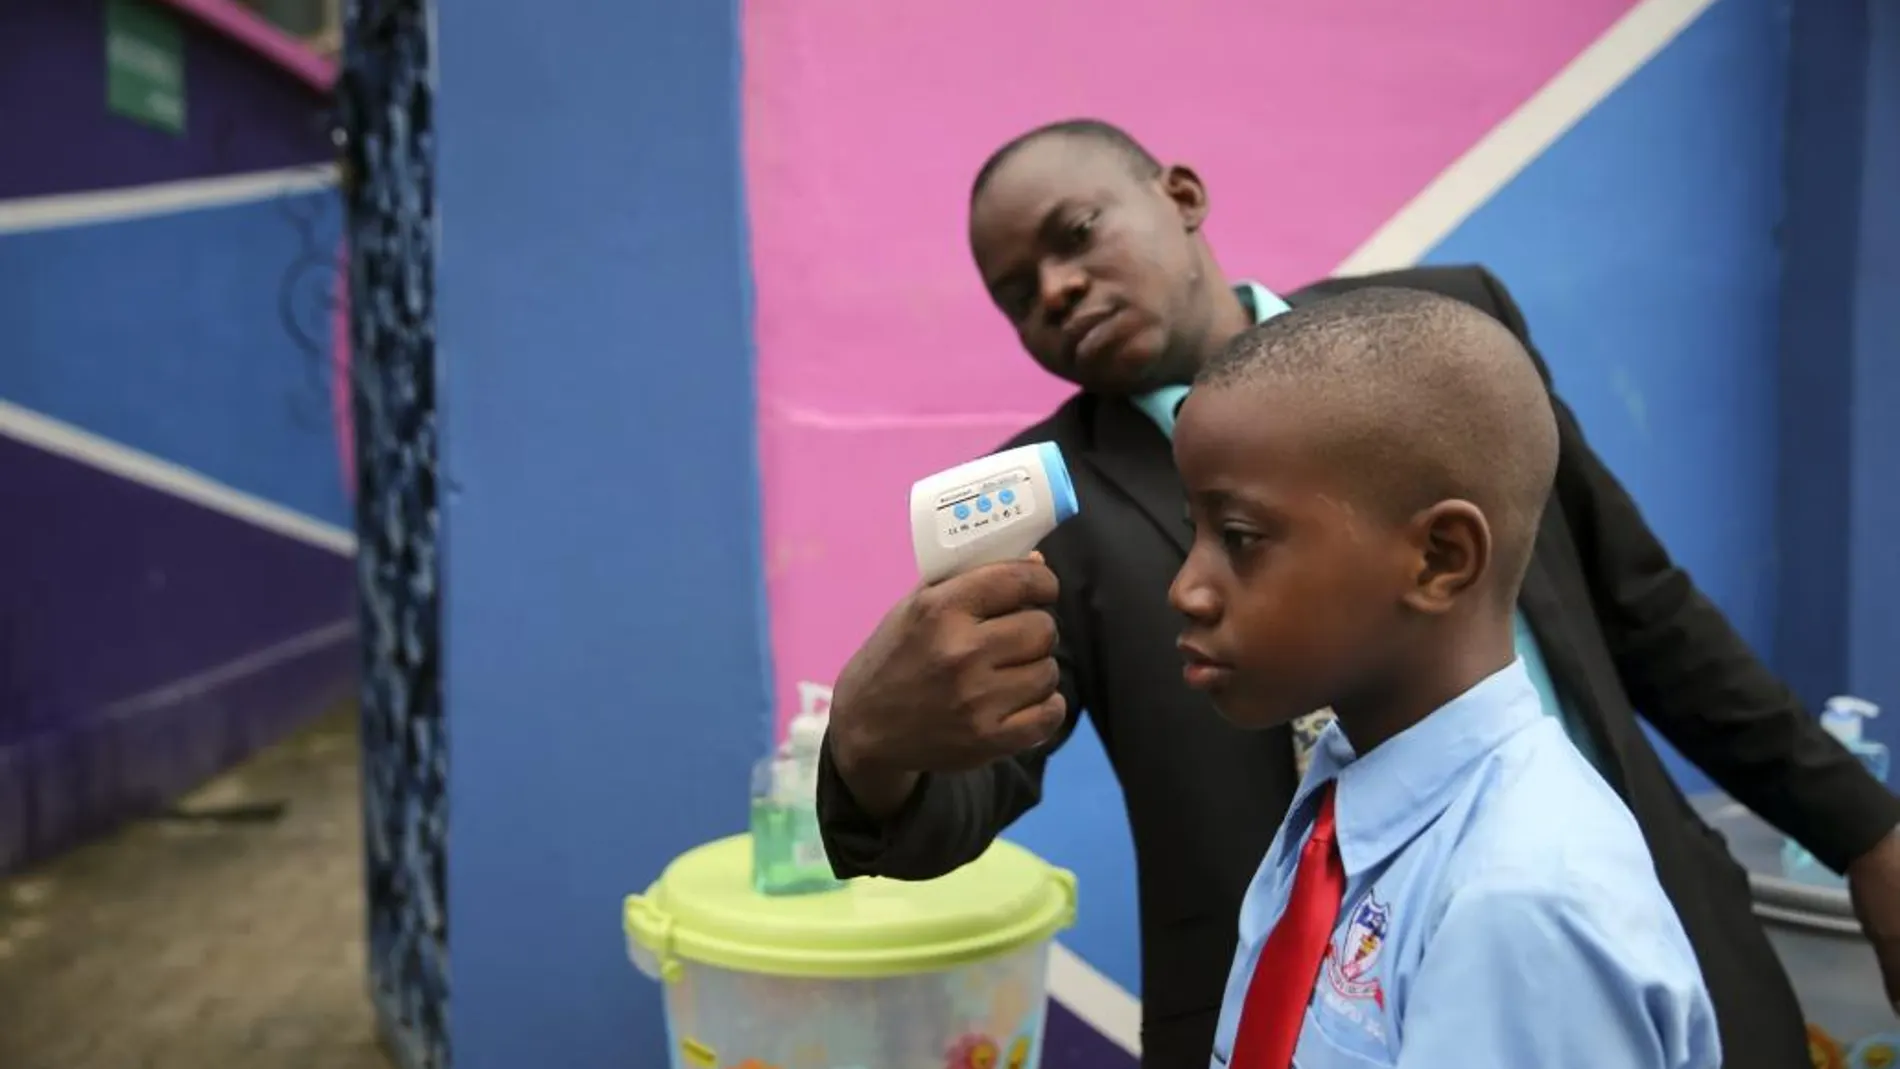 Un médico realiza pruebas del ébola a un alumno, en septiembre de 2014, poco antes de que el país fuera declarado libre de esta enfermedad